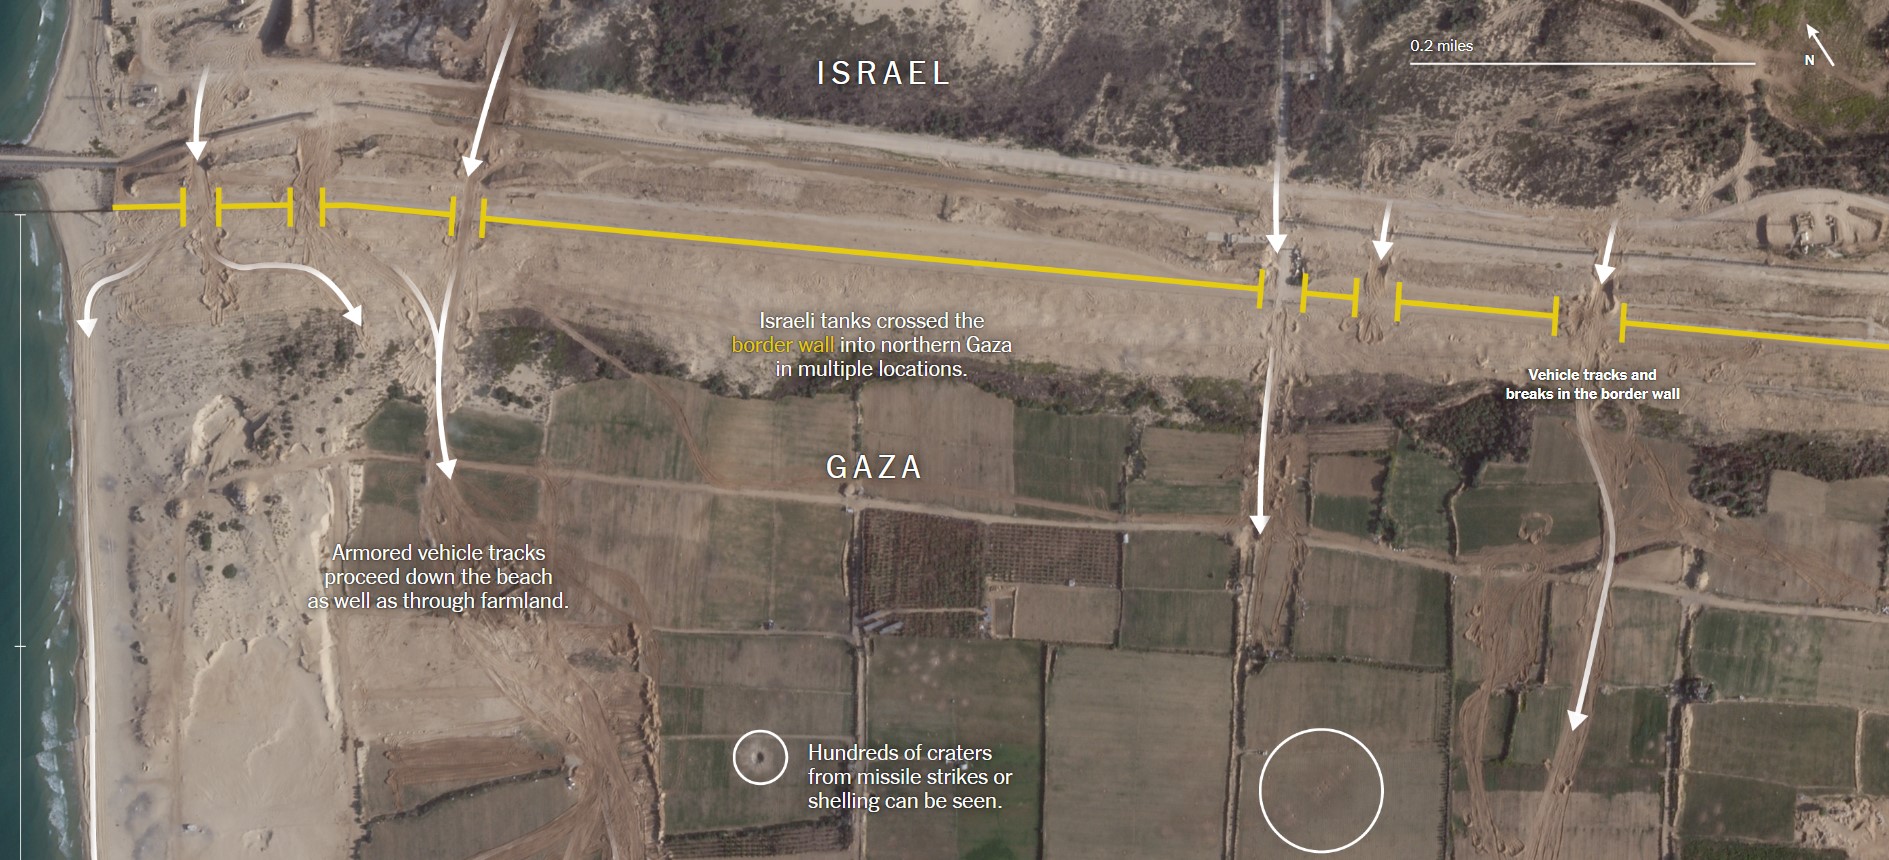 Πόλεμος Ισραήλ - Χαμάς: Η έκταση της ισραηλινής εισβολής στη Γάζα μέσα από δορυφορικές εικόνες